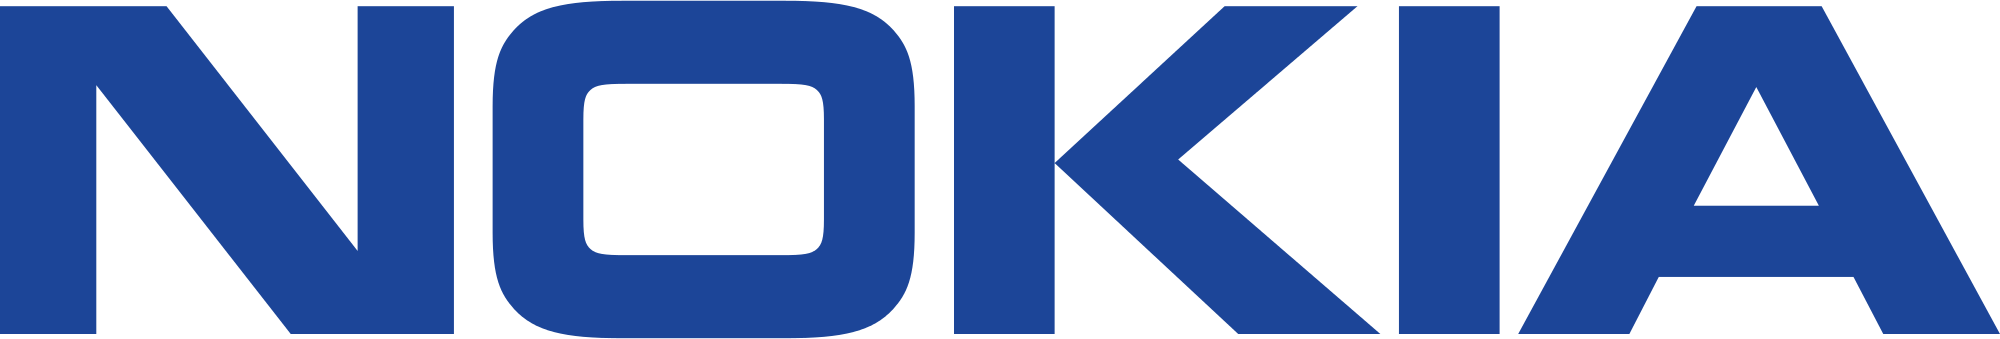 498675 Nokia logo - Redes privadas de fibra ótica para o mundo digital